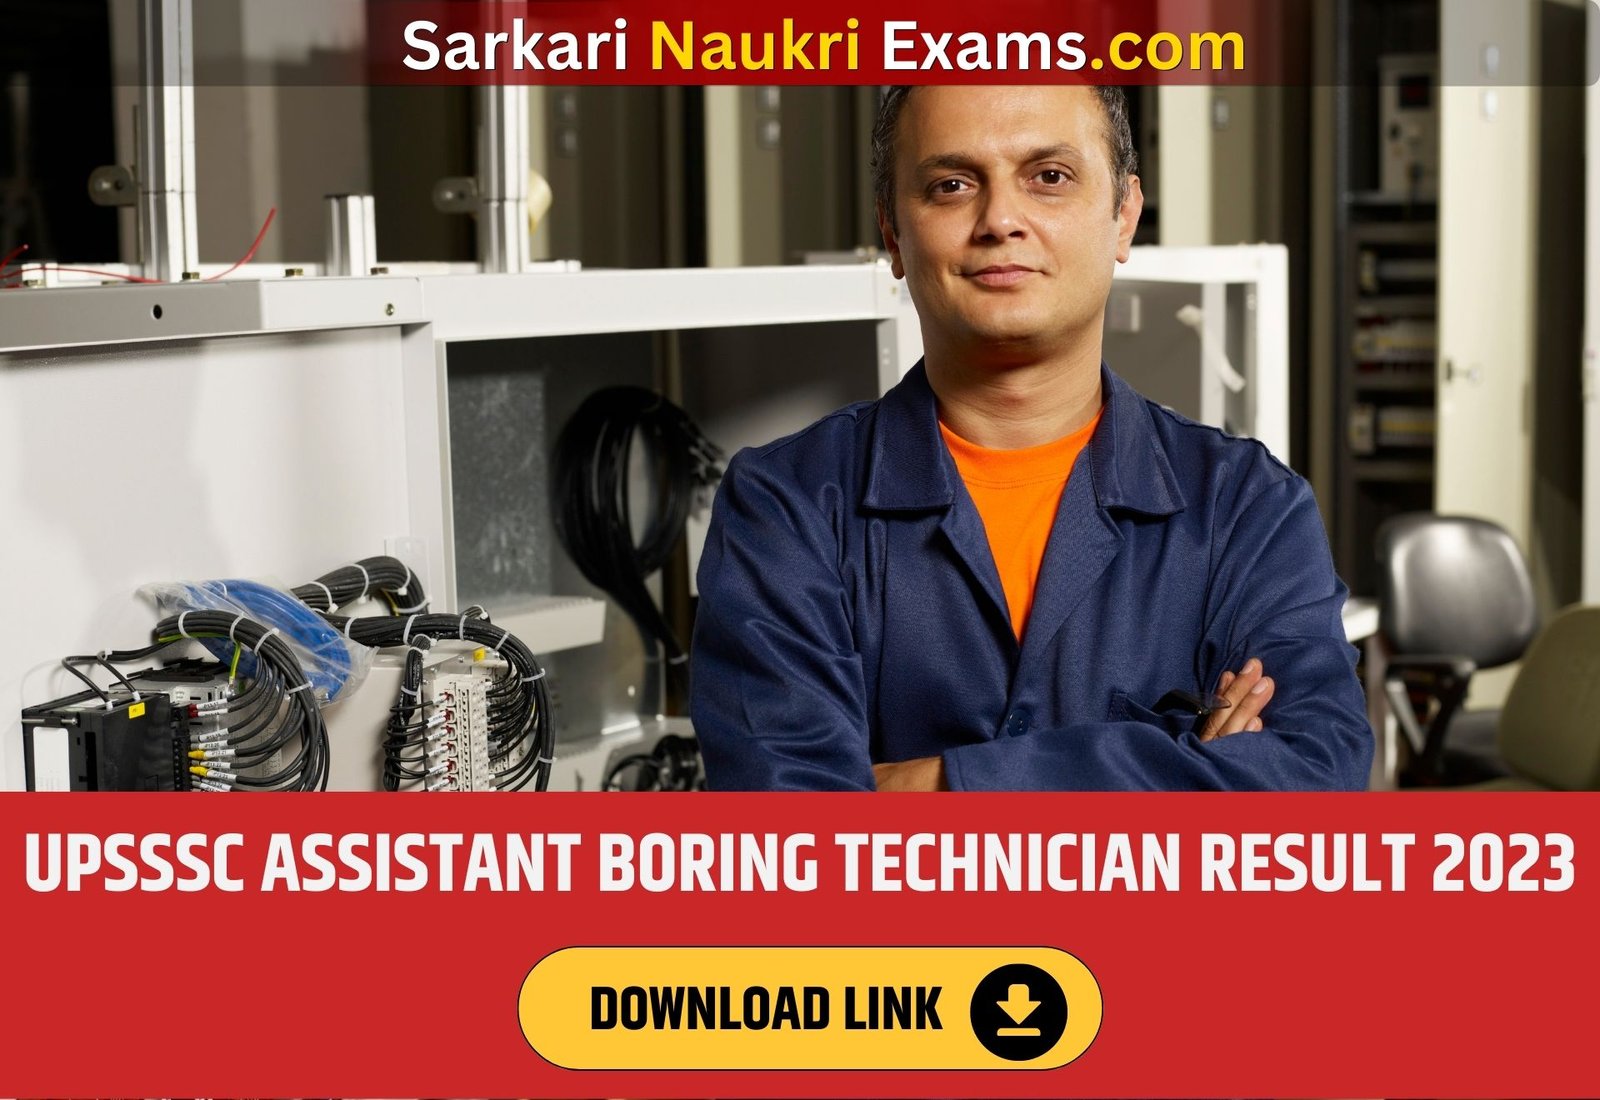 UPSSSC Assistant Boring Technician Result 2023 | Download Link, Cut Off